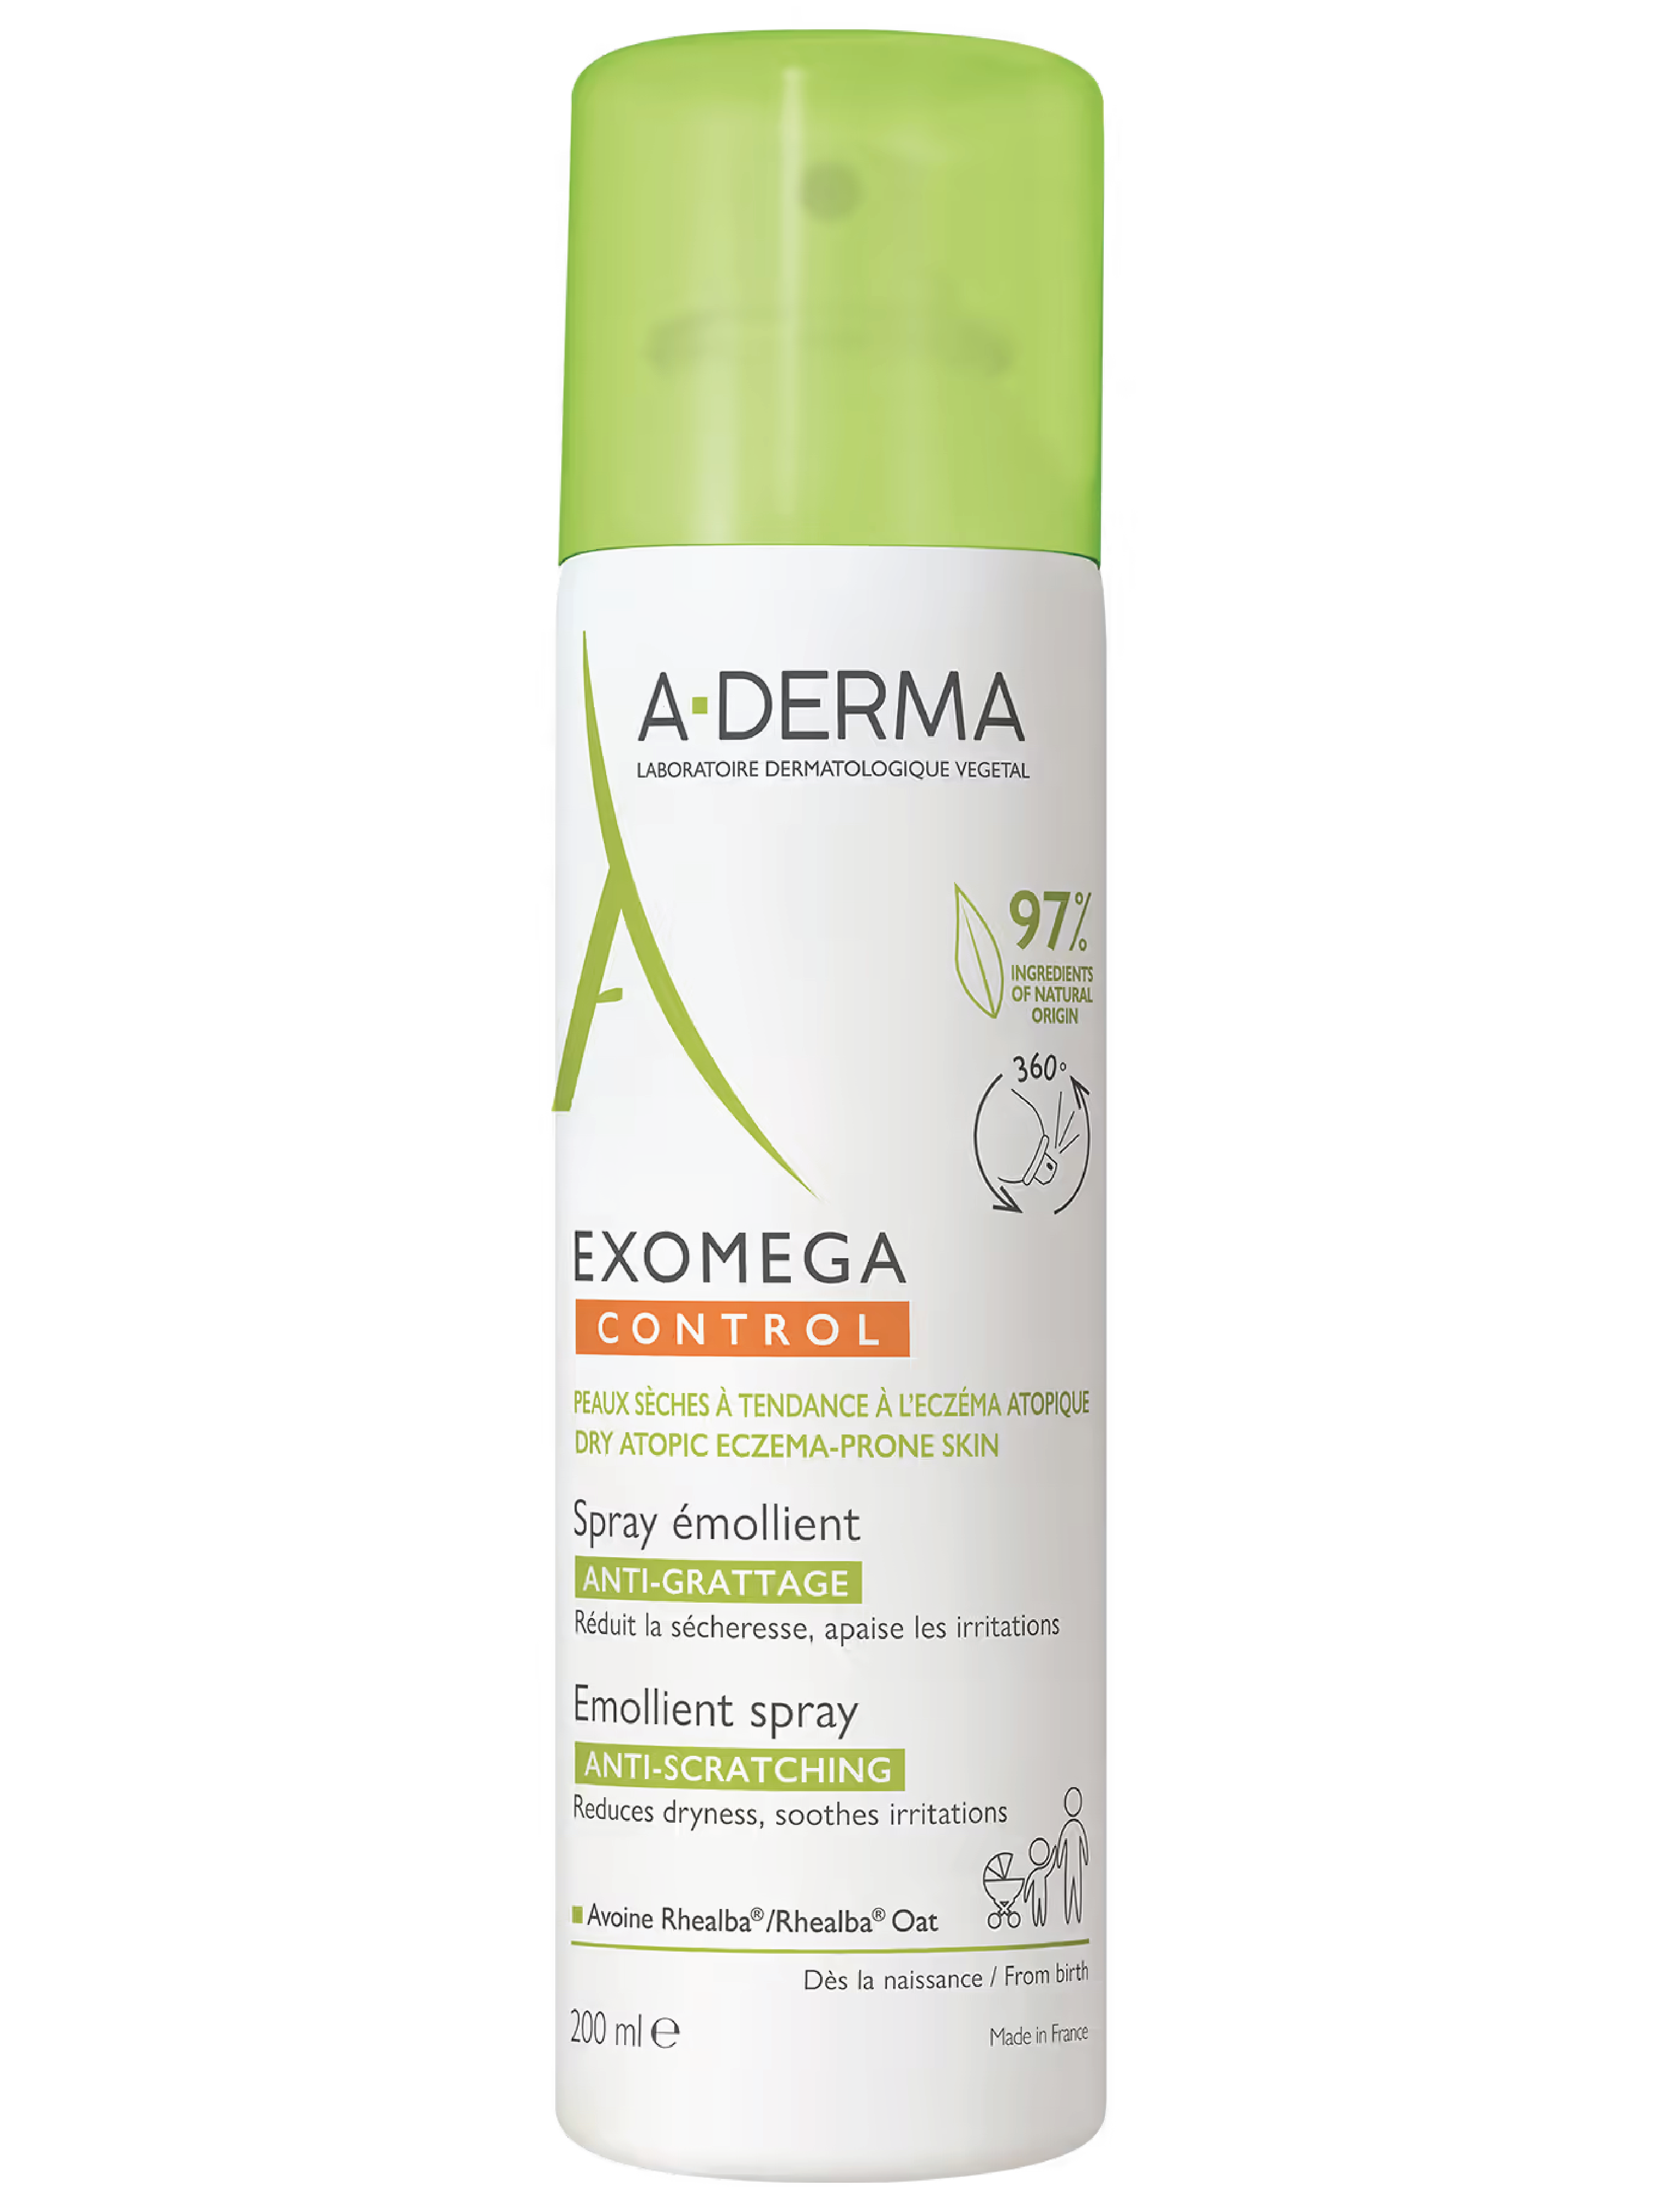 A-Derma Exomega Control Emollient Spray, 200 ml